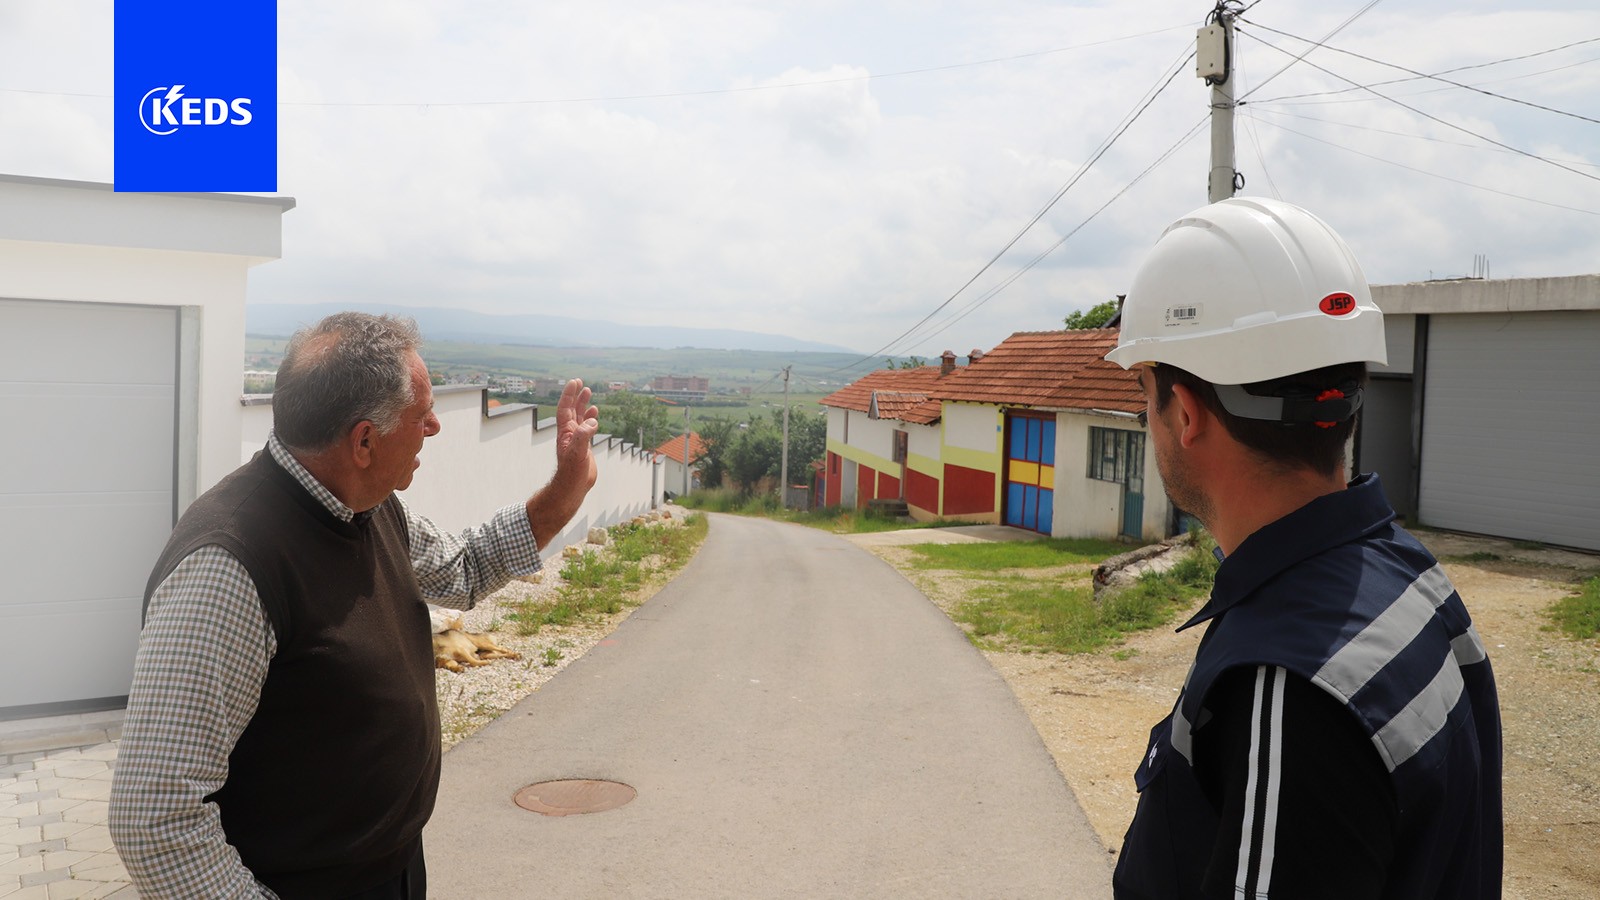 Afër dhjetë mijë banorë të fshatrave të Skenderajt përfitojnë nga rrjeti i ri elektrik